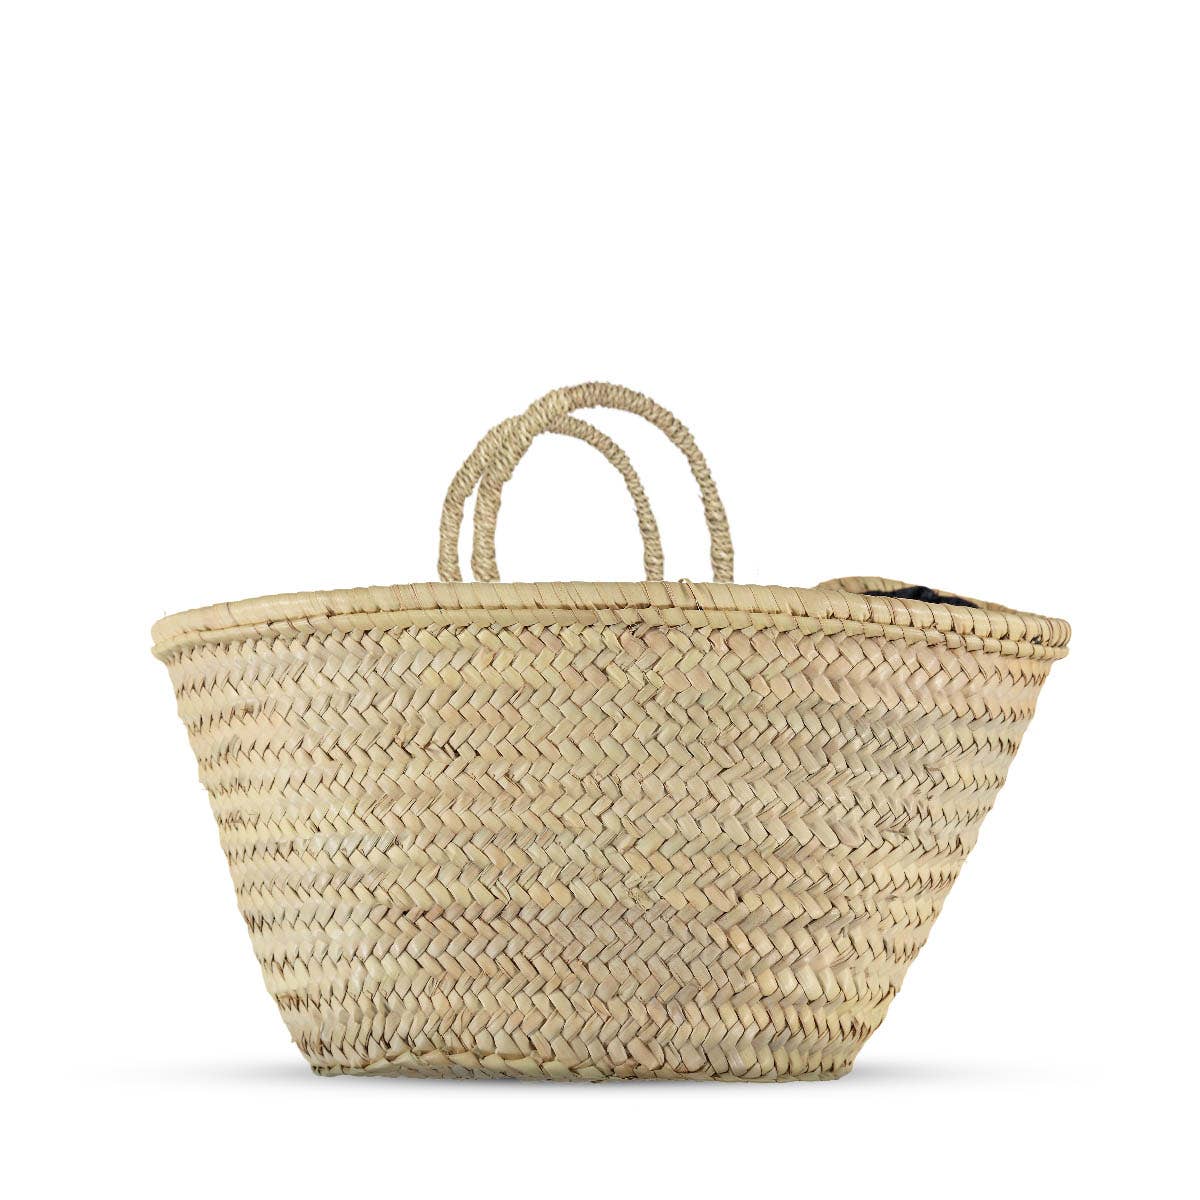 Wicker Bag France Market Basket Wicker Small Purse Basket 